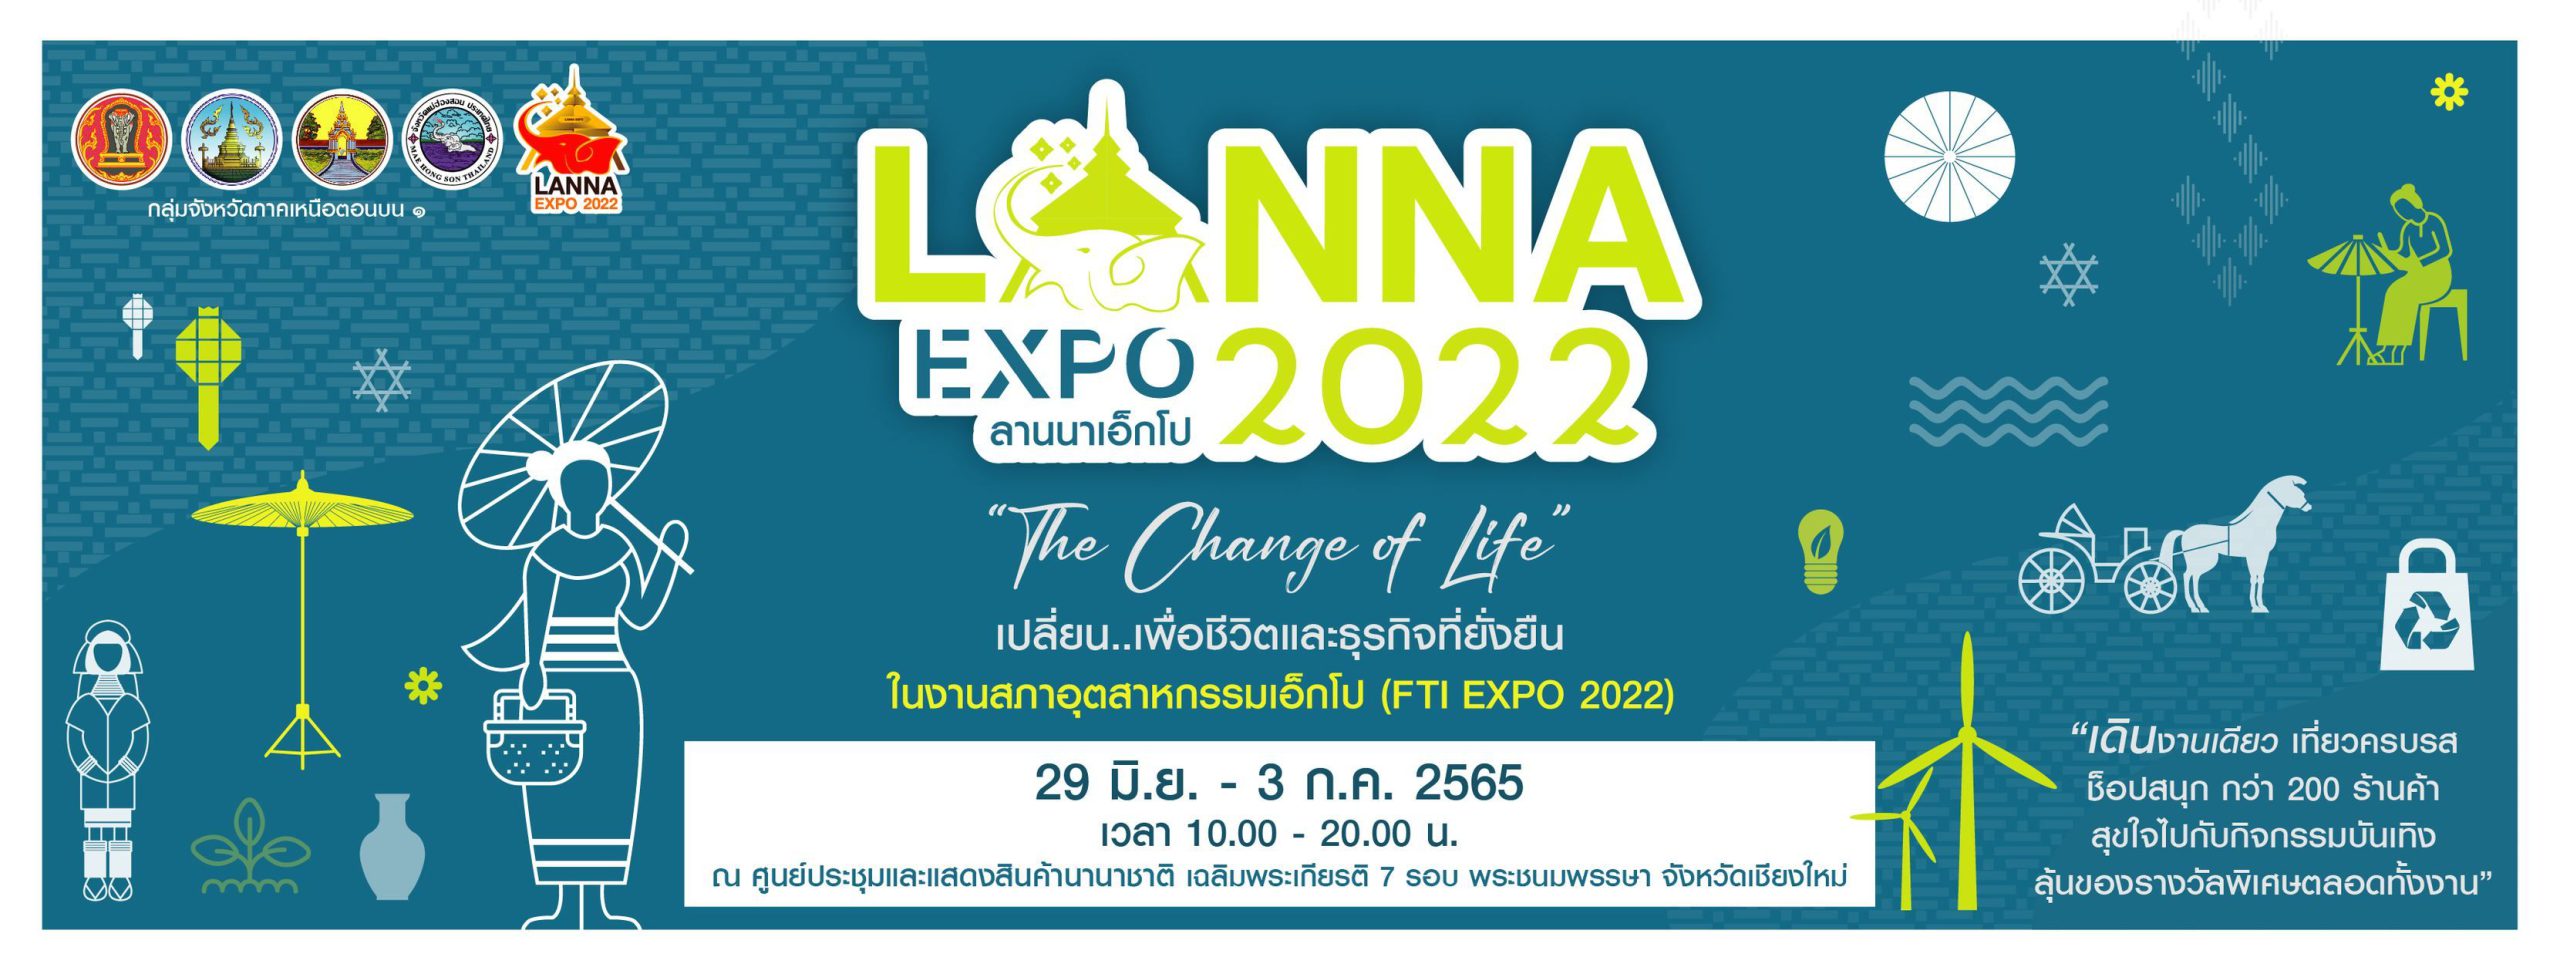 พาณิชย์ฯ เชียงใหม่ เผย การจัดงาน Lanna Expo 2022 มียอดจำหน่ายและสั่งซื้อสินค้ากว่า 30 ล้านบาท